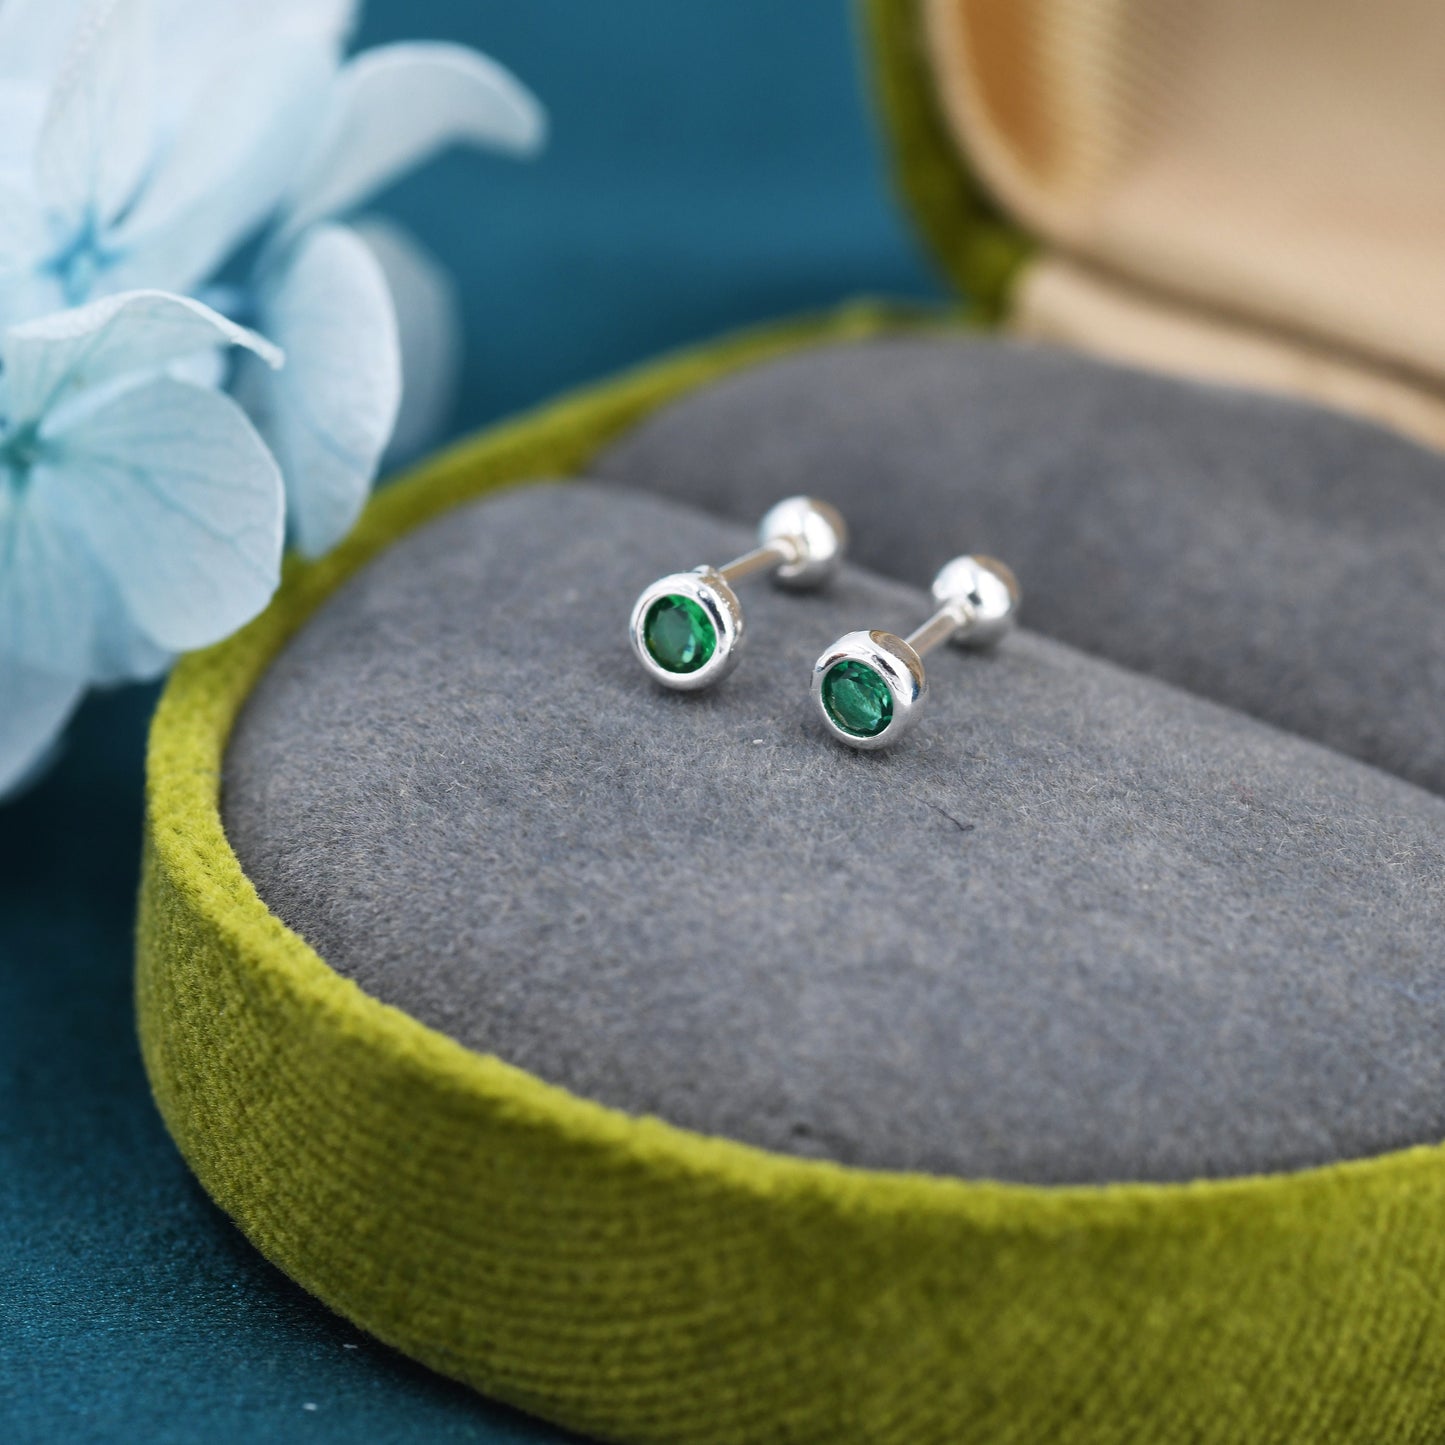 Tiny Emerald Green CZ Barbell Earrings in Sterling Silver,  3mm CZ Screw Back Dot Earrings, Screwback Earrings, May Birthstone